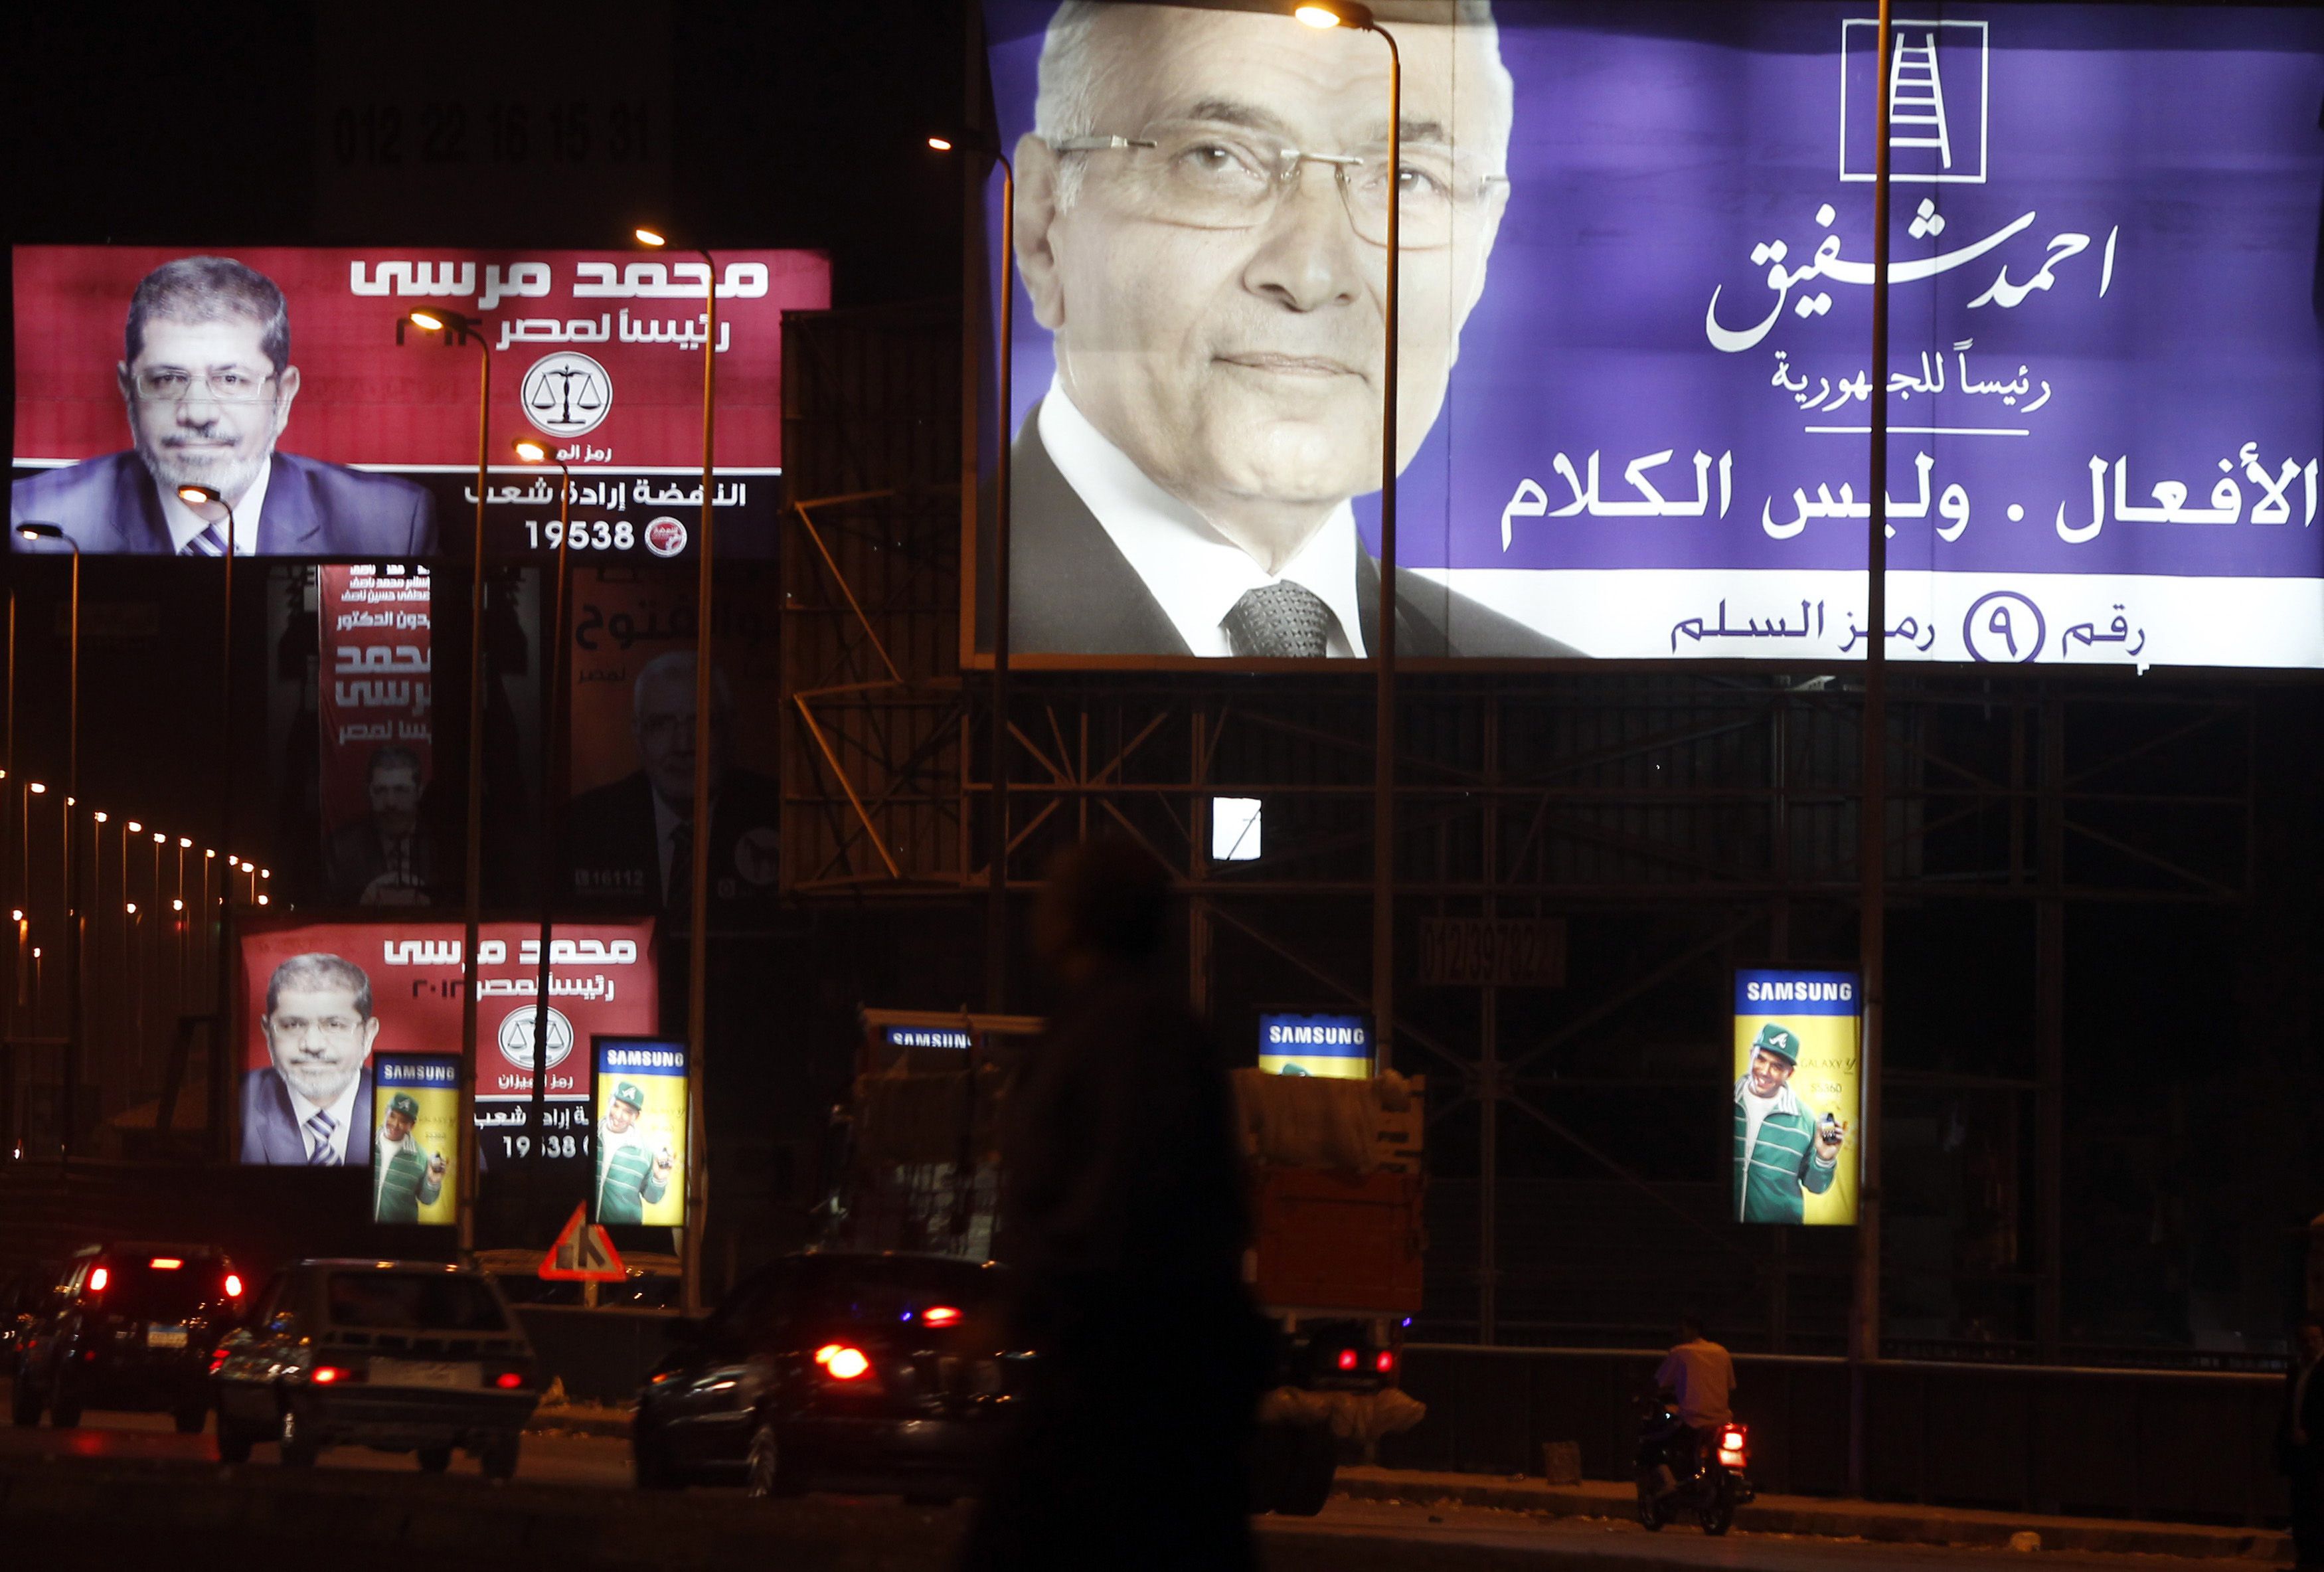 اليوم.. بدء الحملات الانتخابية لمرسي وشفيق رسميا